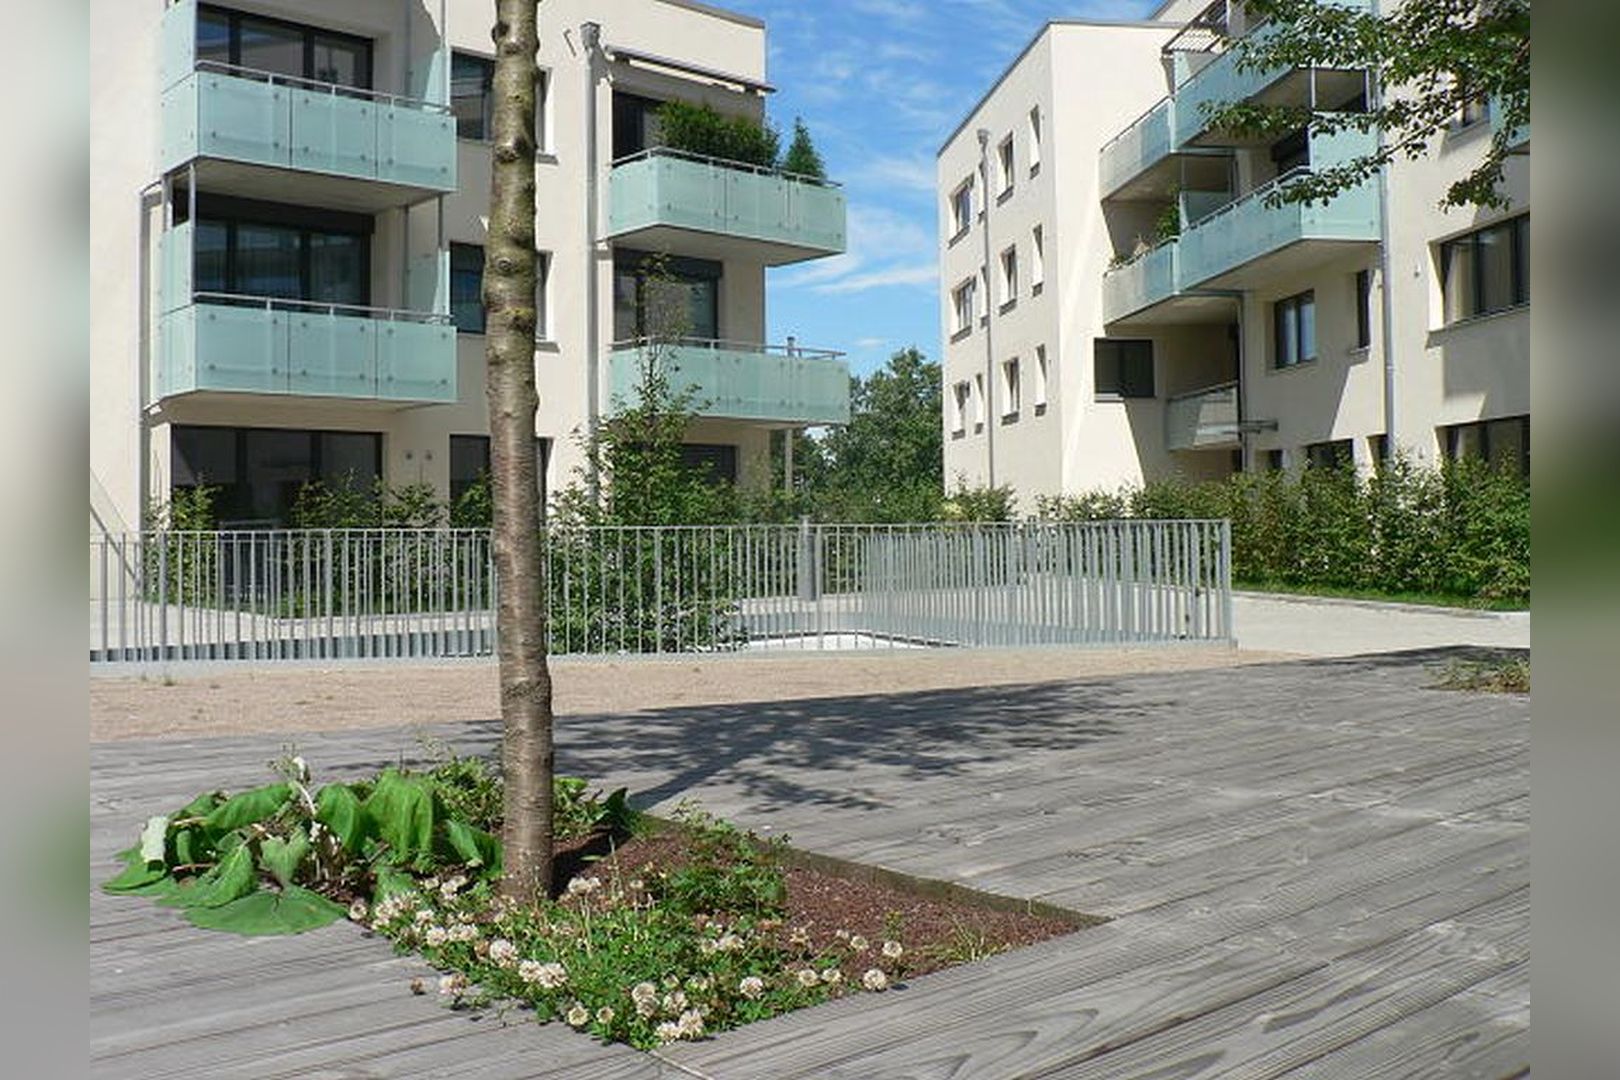 Immobilie Nr.Hilden 005 - 2-Raum-Maisonette-Wohnung mit Terrasse & Gärtchen - Bild 10.jpg